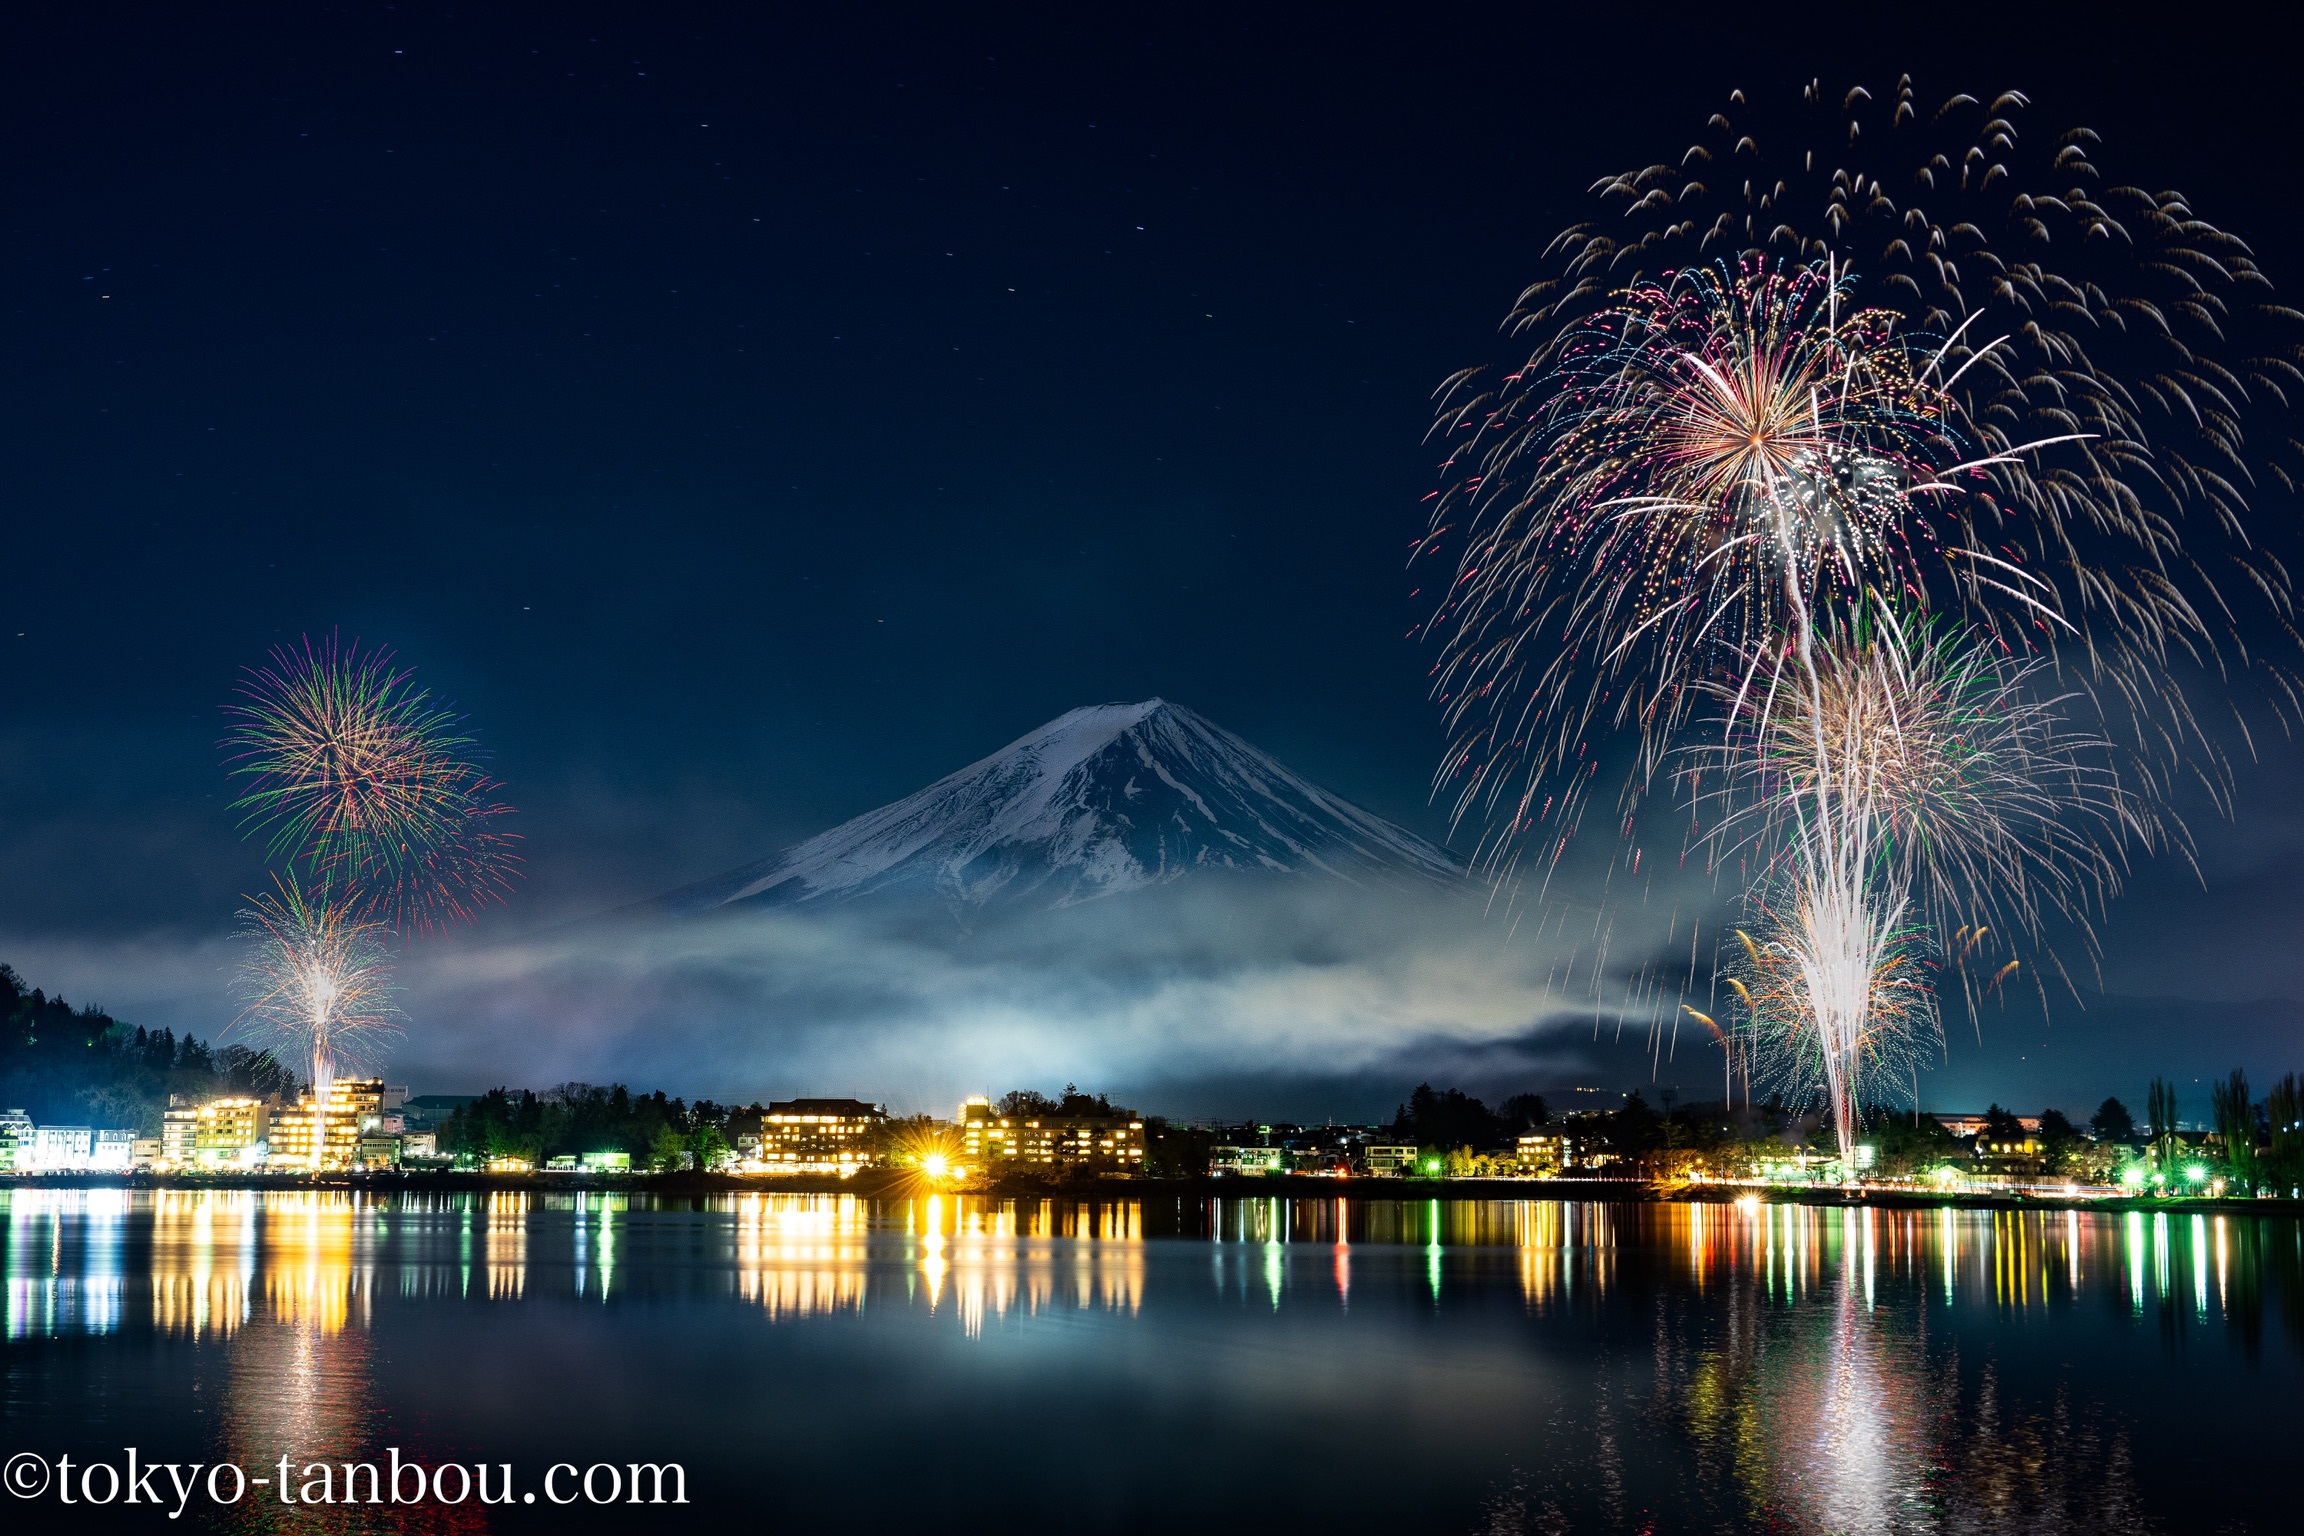 2019年 河口湖で富士山・冬花火の撮影を行った話: ソニーのカメラで